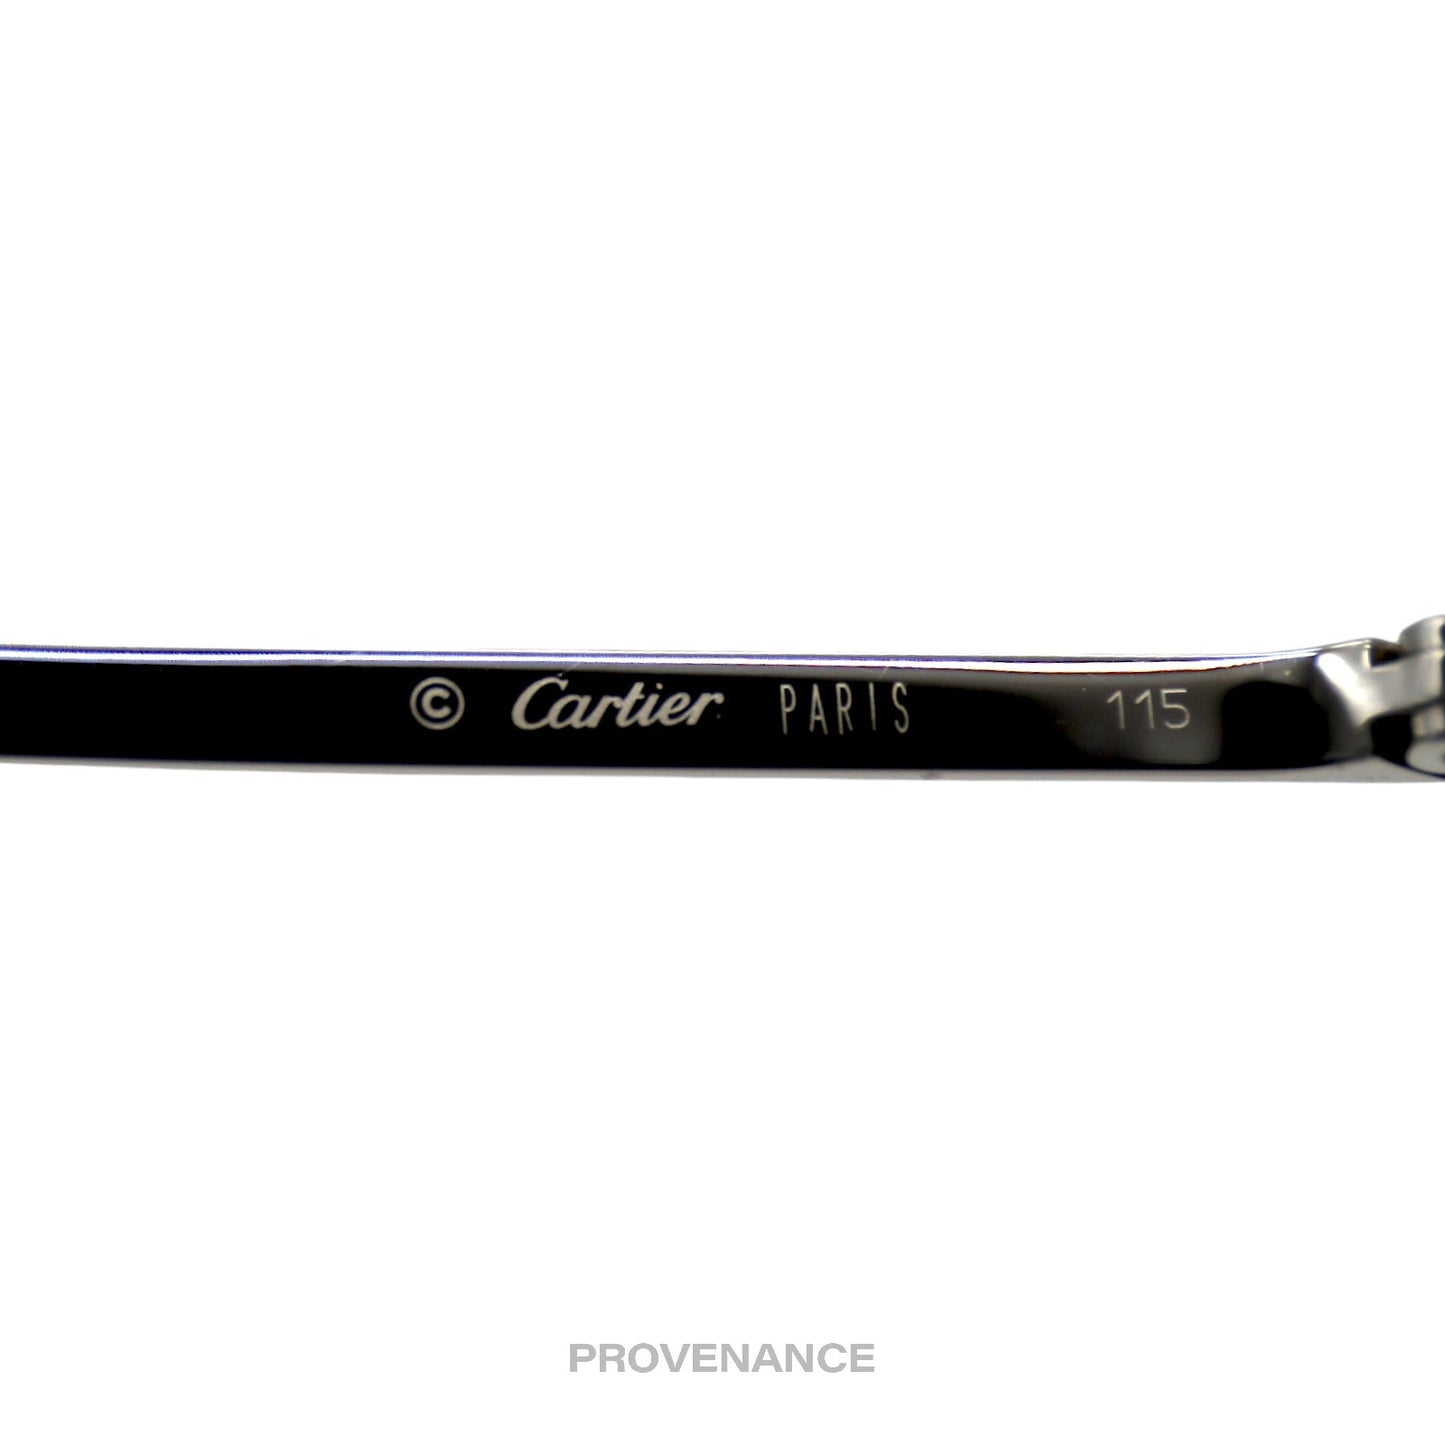 🔴 Cartier C Decor Shield Sunglasses - Platinum Blue